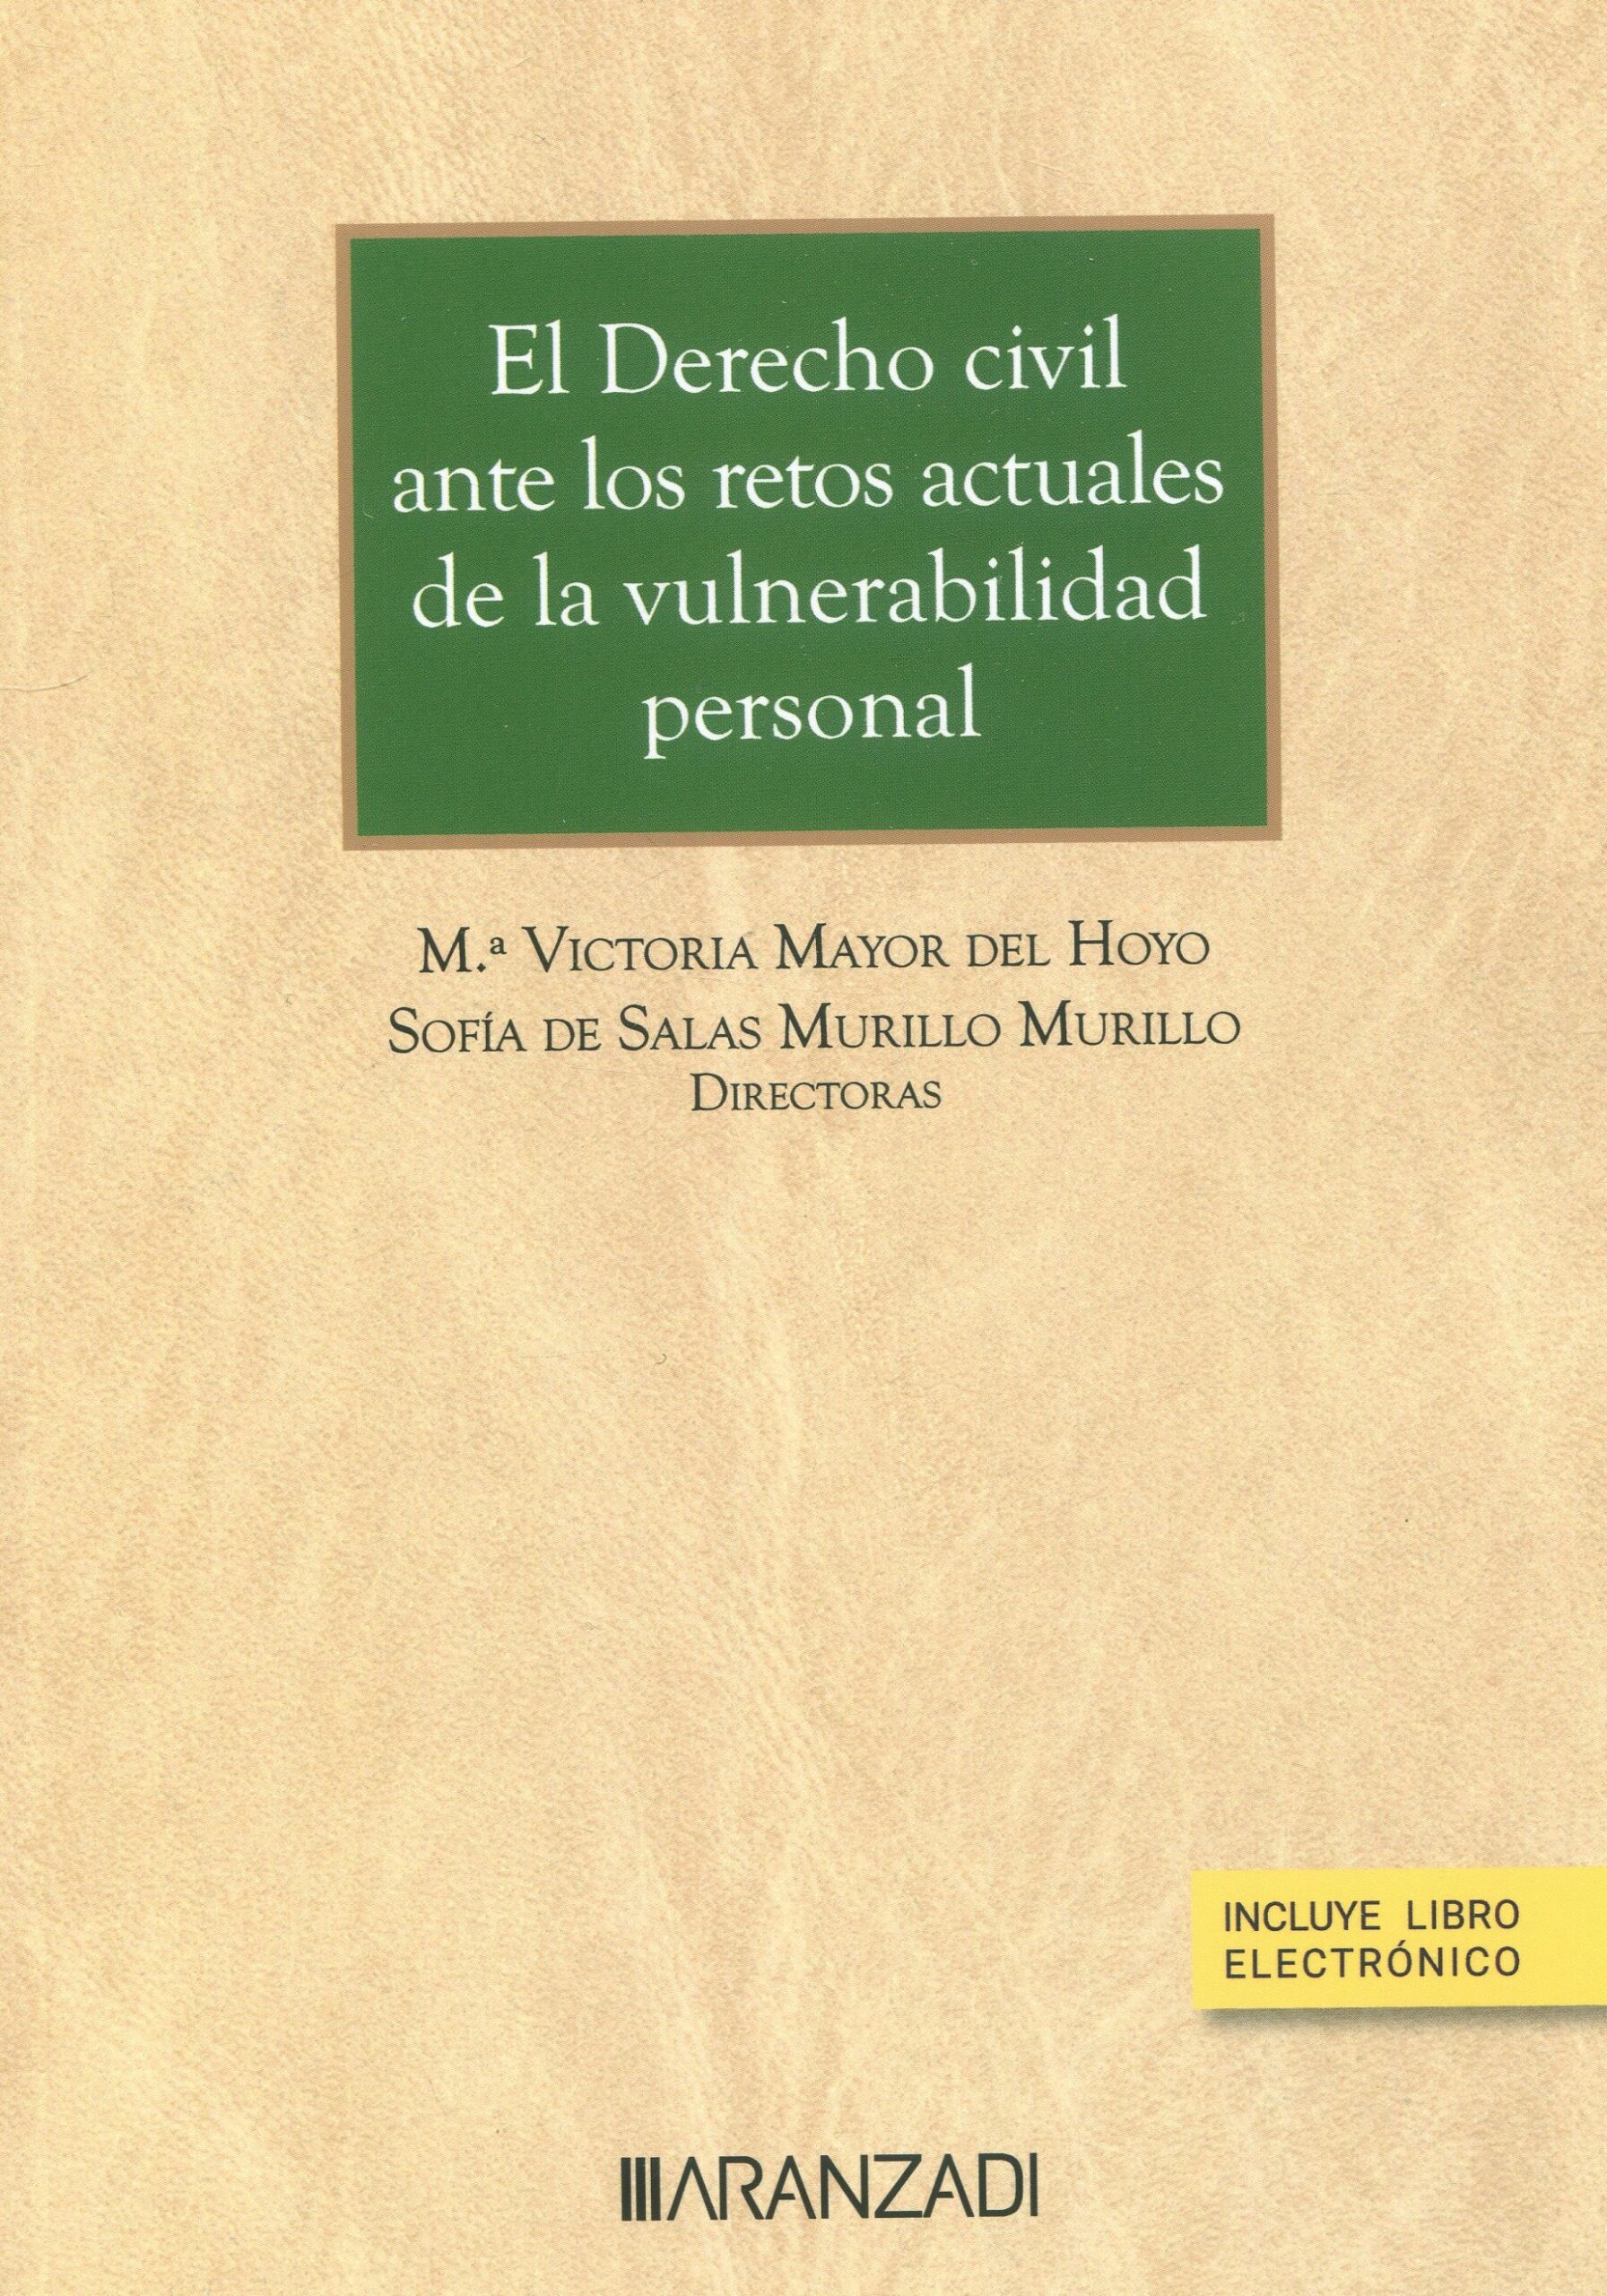 Imagen de portada del libro El derecho civil ante los retos de la vulnerabilidad personal